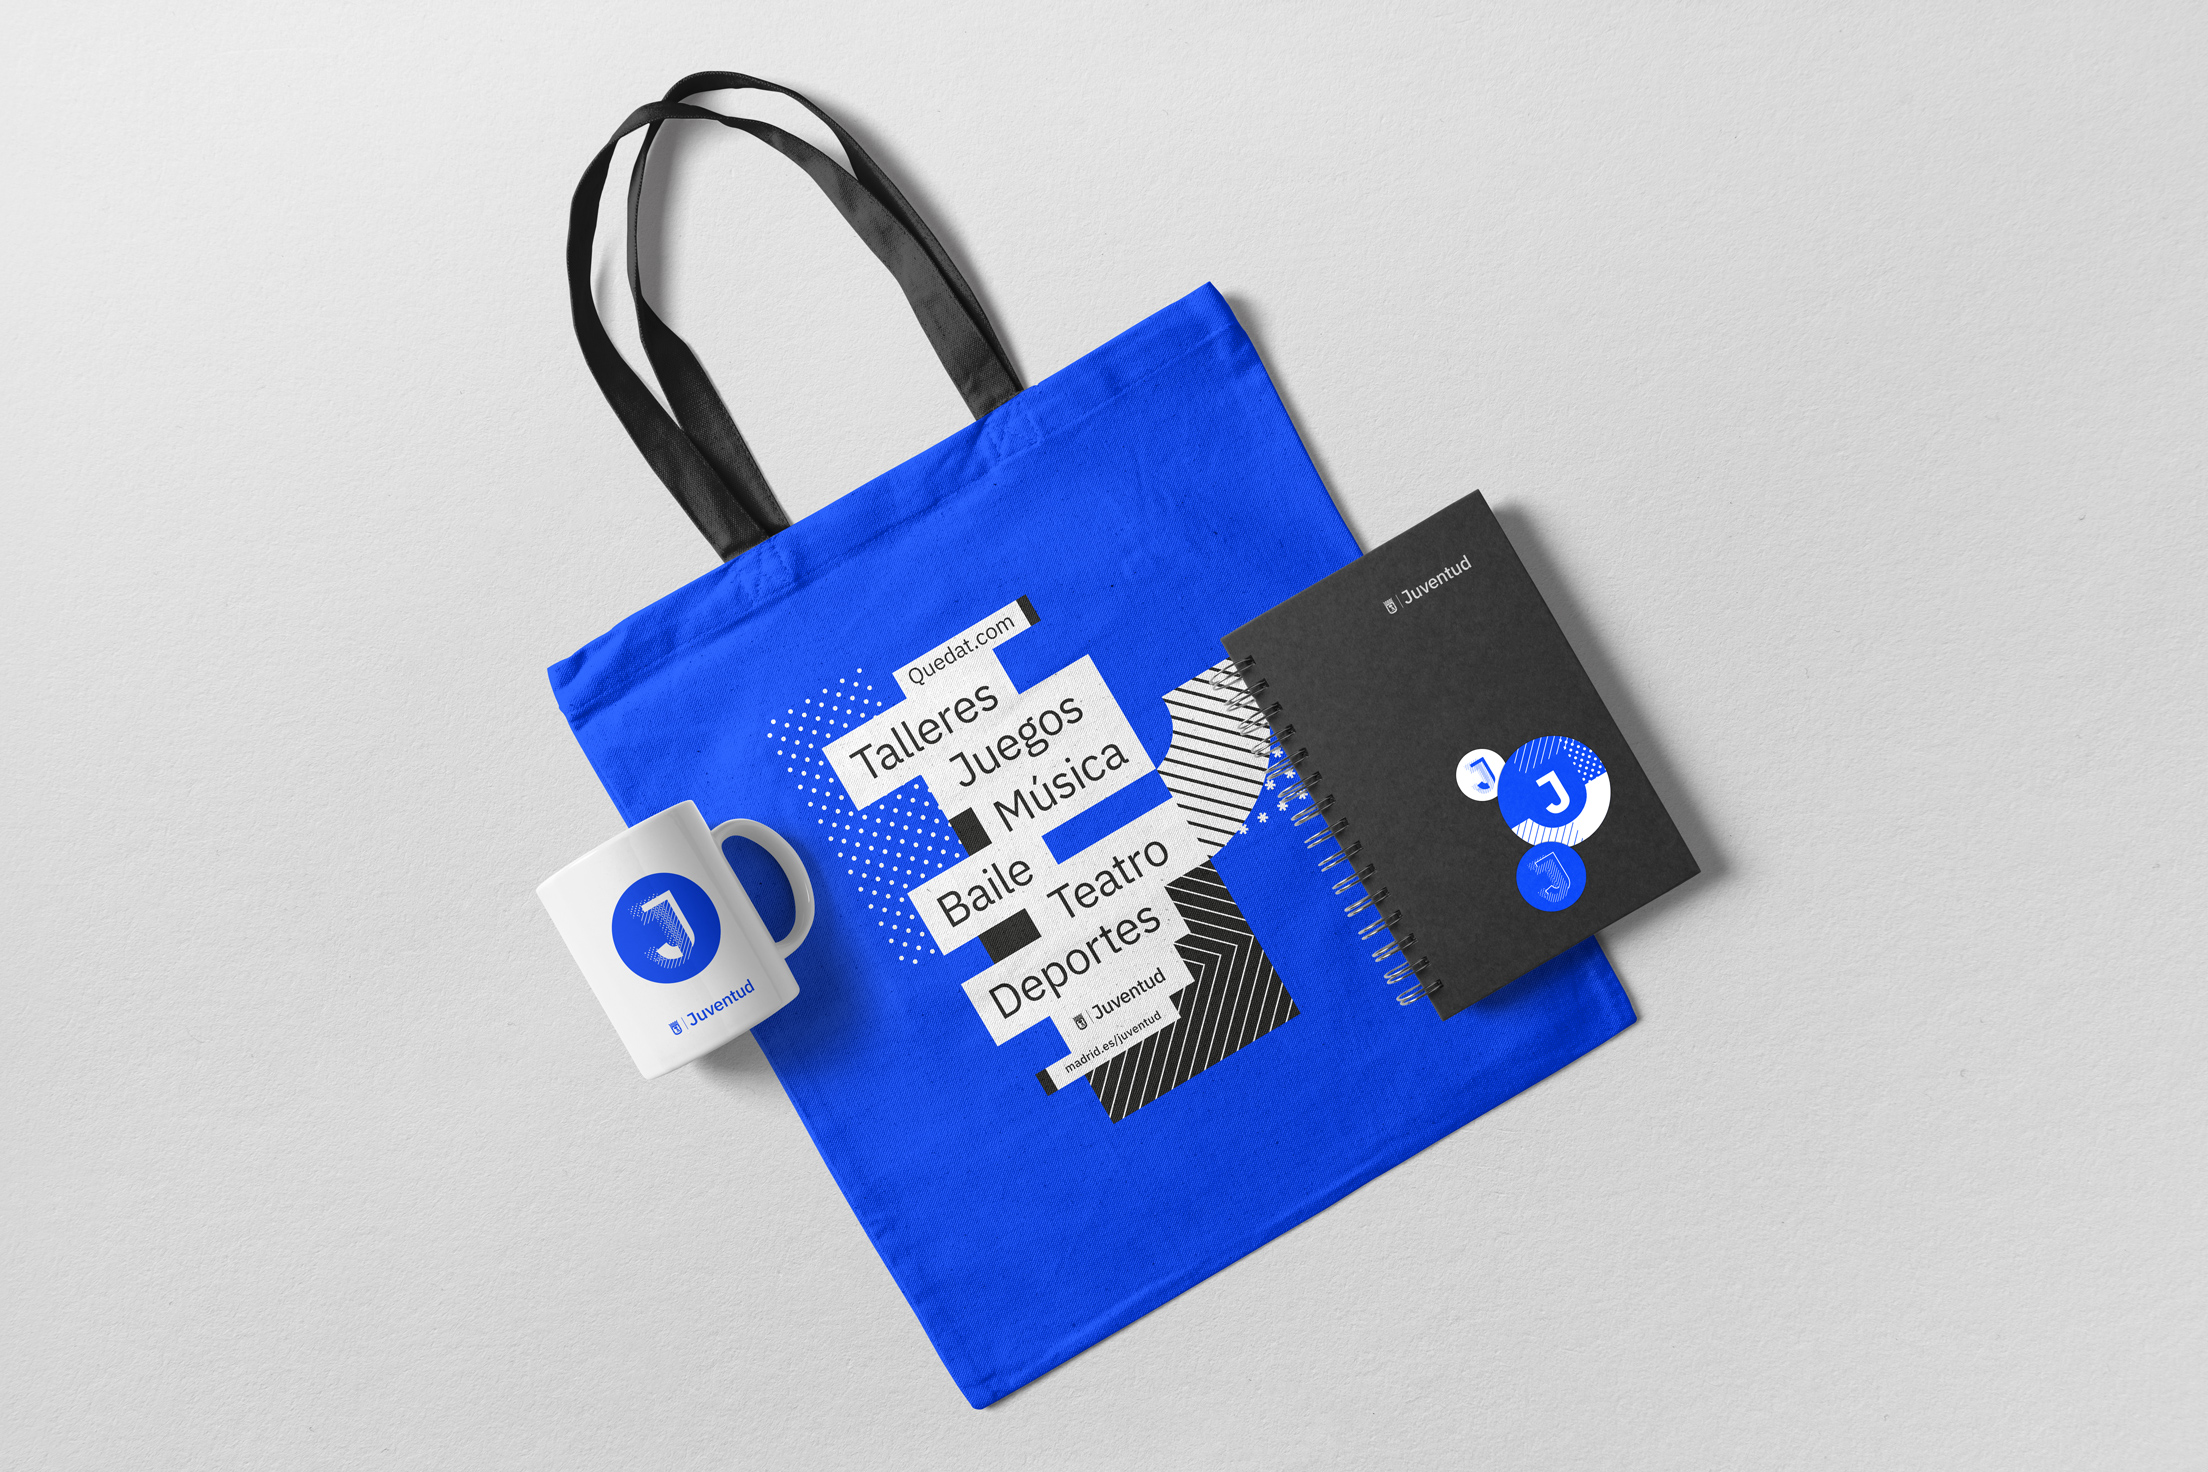 Diseño de merchandising del Área de Juventud del Ayuntamiento de Madrid. Tote bag, taza y libreta con la gráfica corporativa.